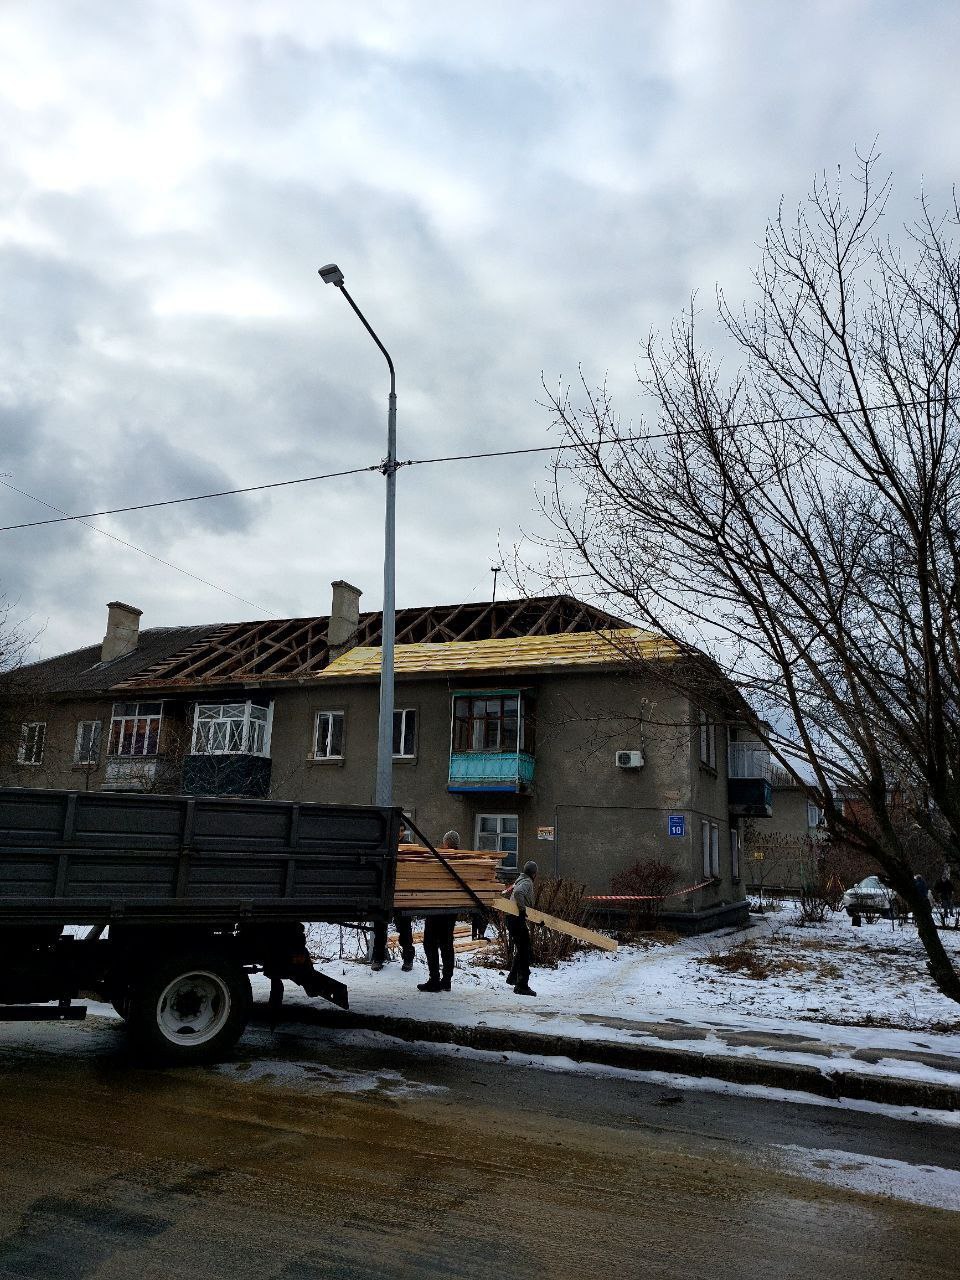 У Харкові на 150 млн грн. збільшать видатки на ремонт будинків після обстрілів